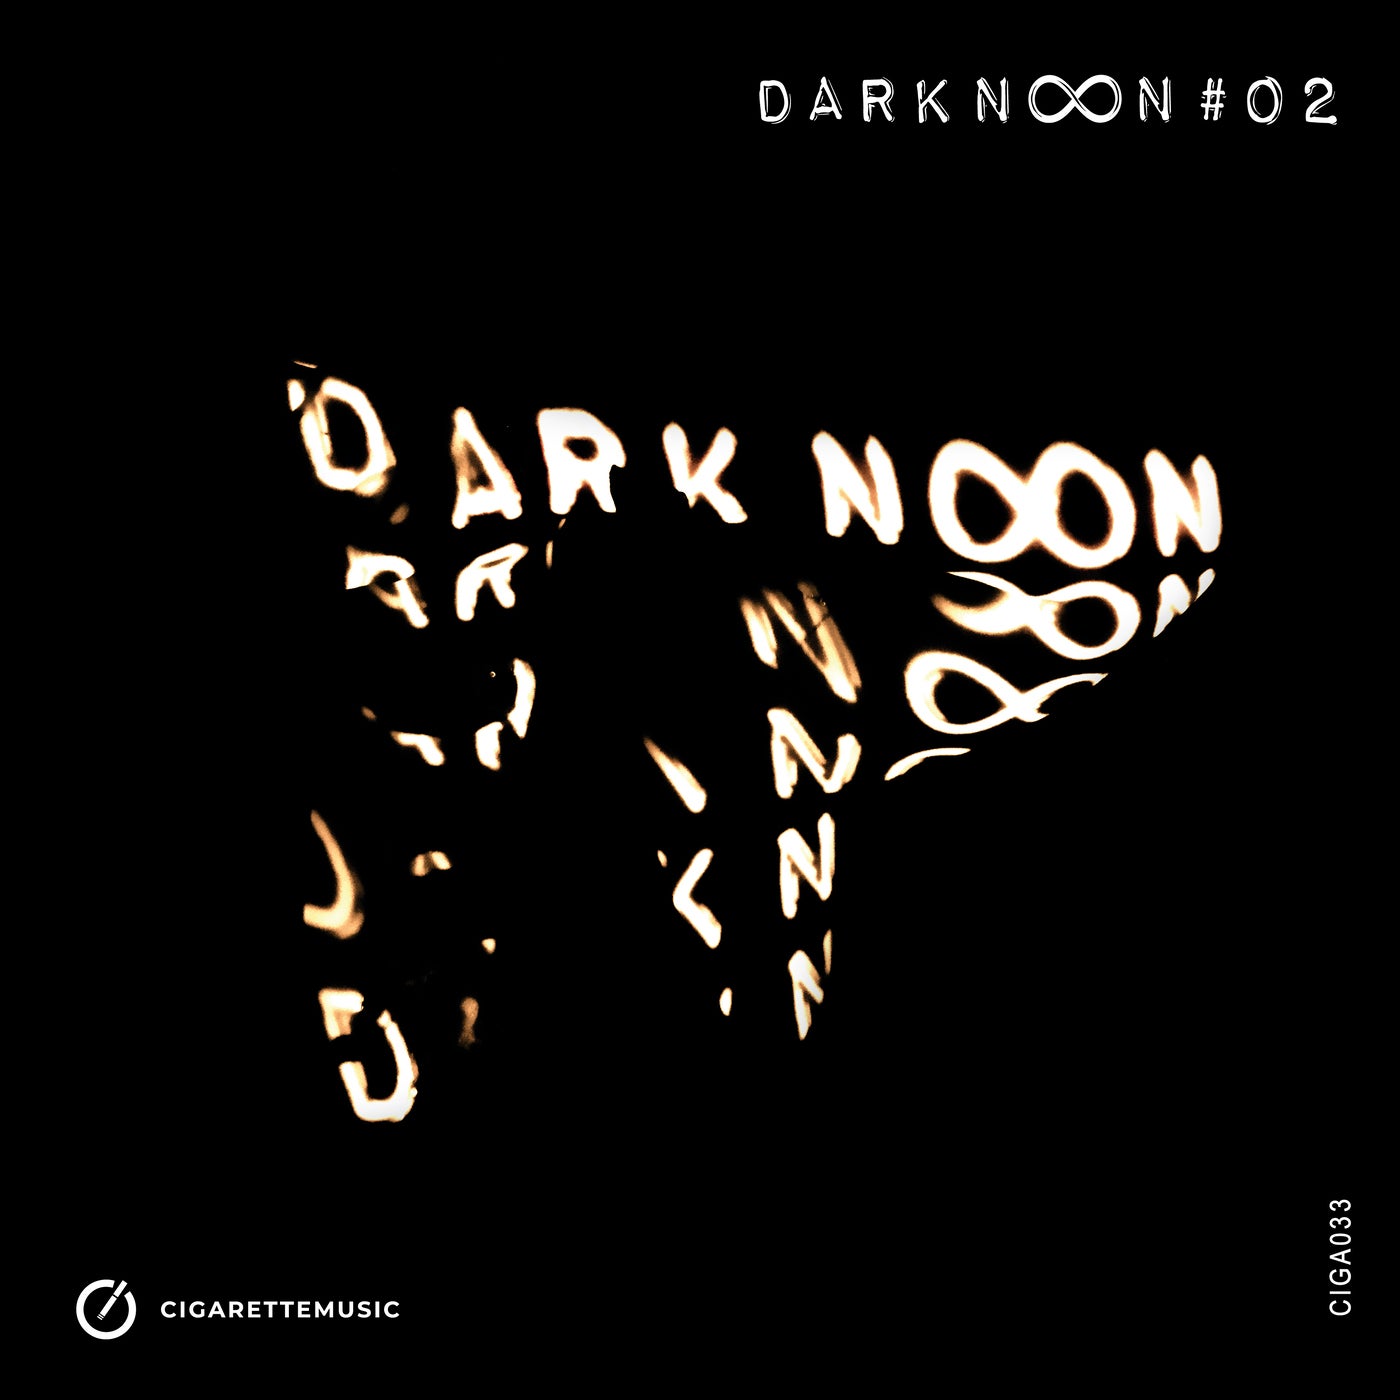 Darknoon #02